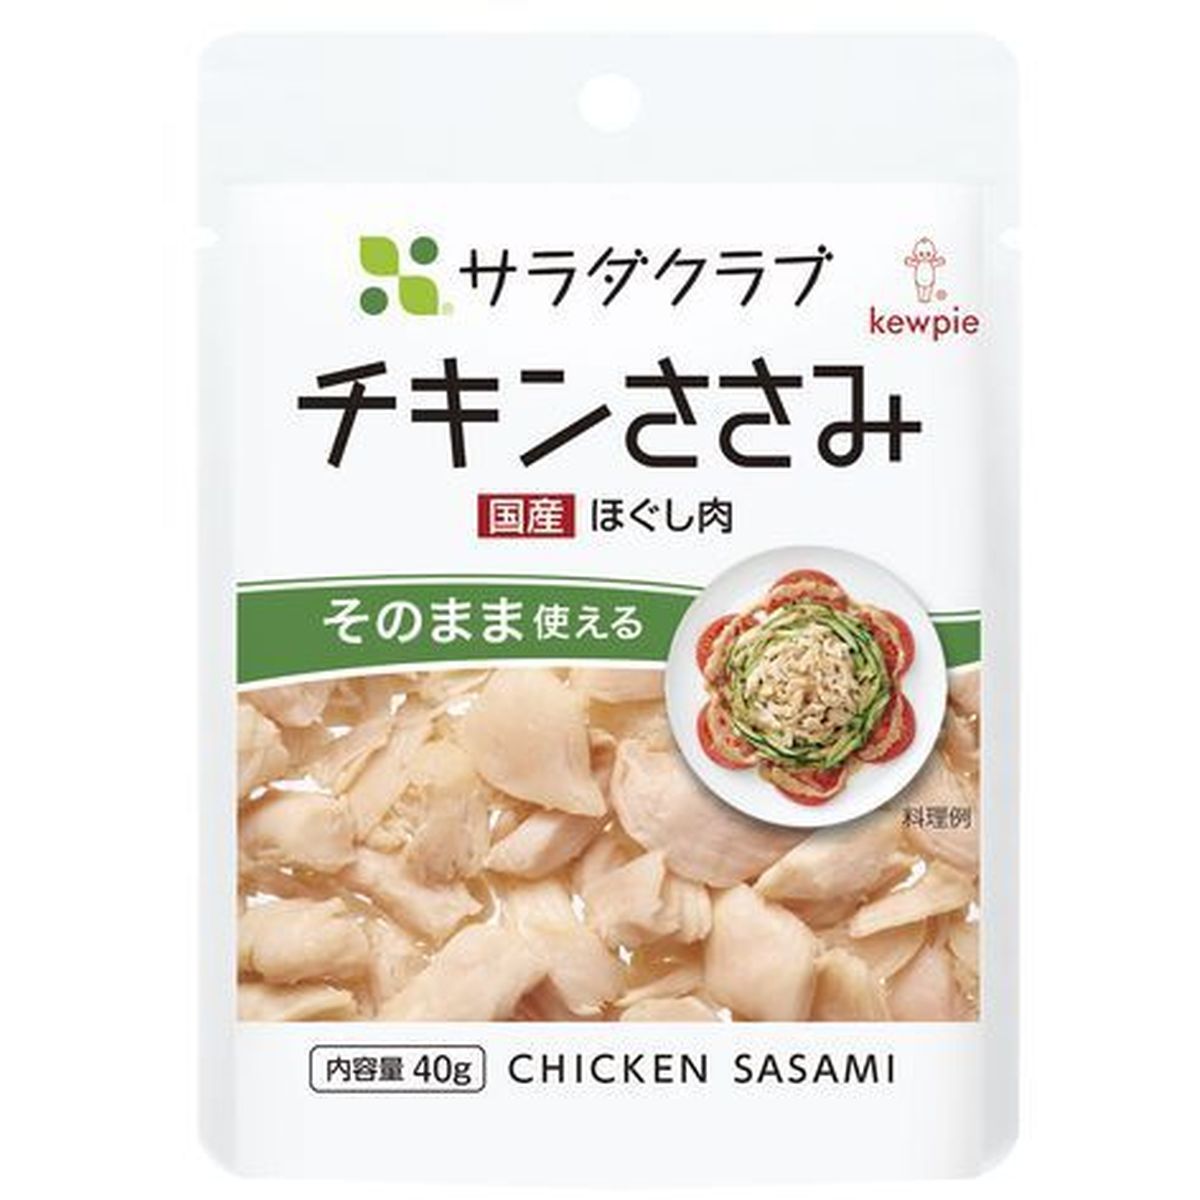 【10個入リ】サラダクラブ チキンササミ(ホグシ肉) 40g